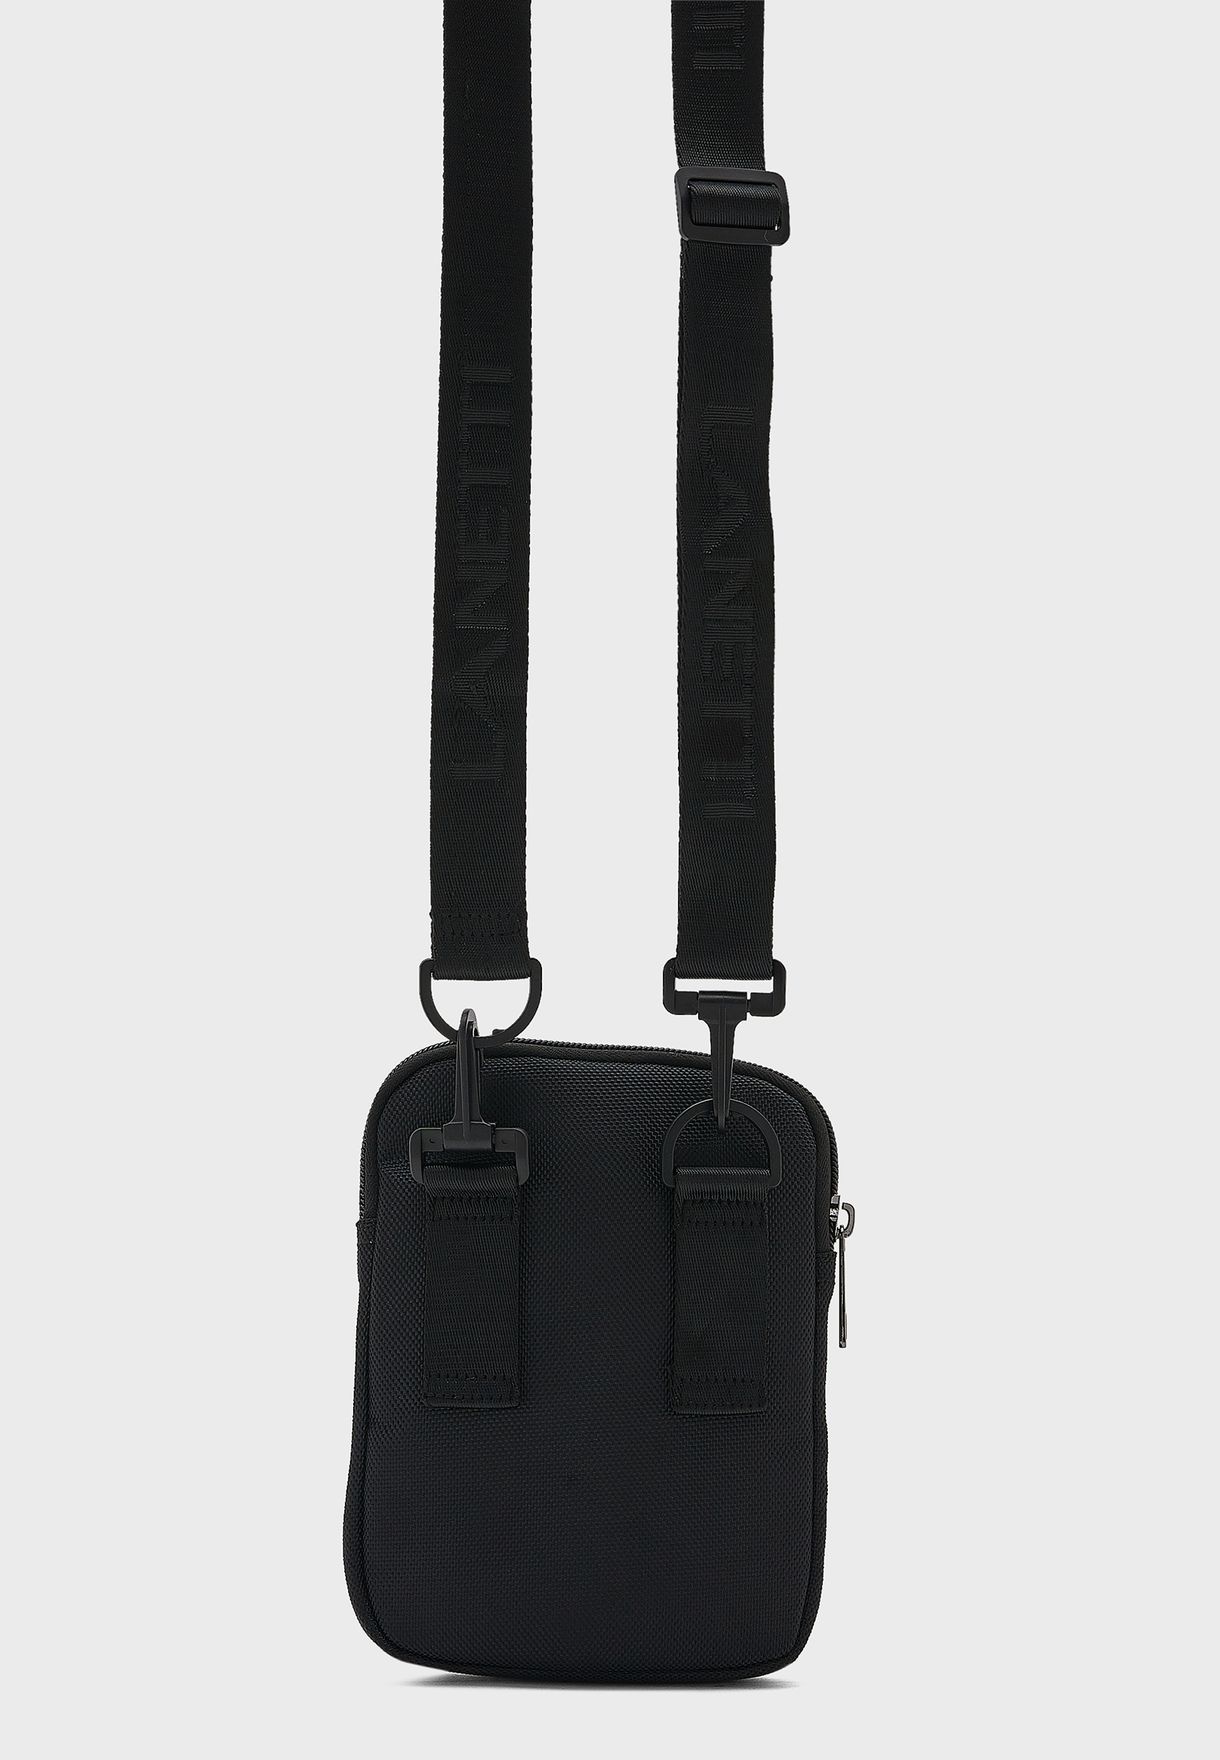 Buy Ccc black Lanetti Men'S Msg Bag for Men in Dubai, Abu Dhabi